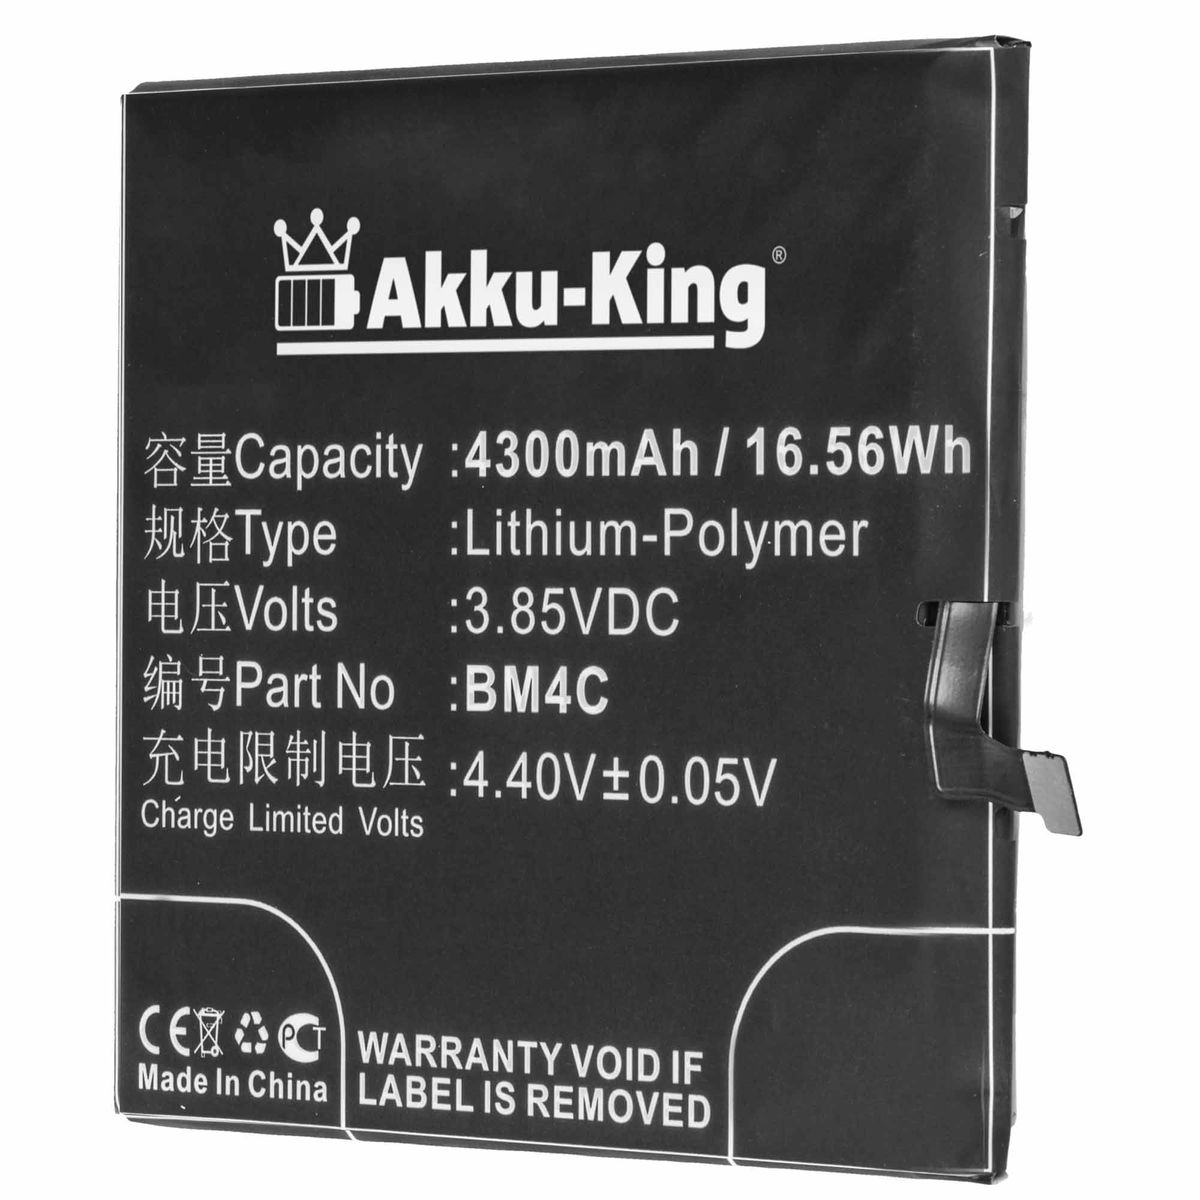 Akku kompatibel BM4C Handy-Akku, Xiaomi AKKU-KING Volt, Li-Polymer 3.85 mit 4300mAh